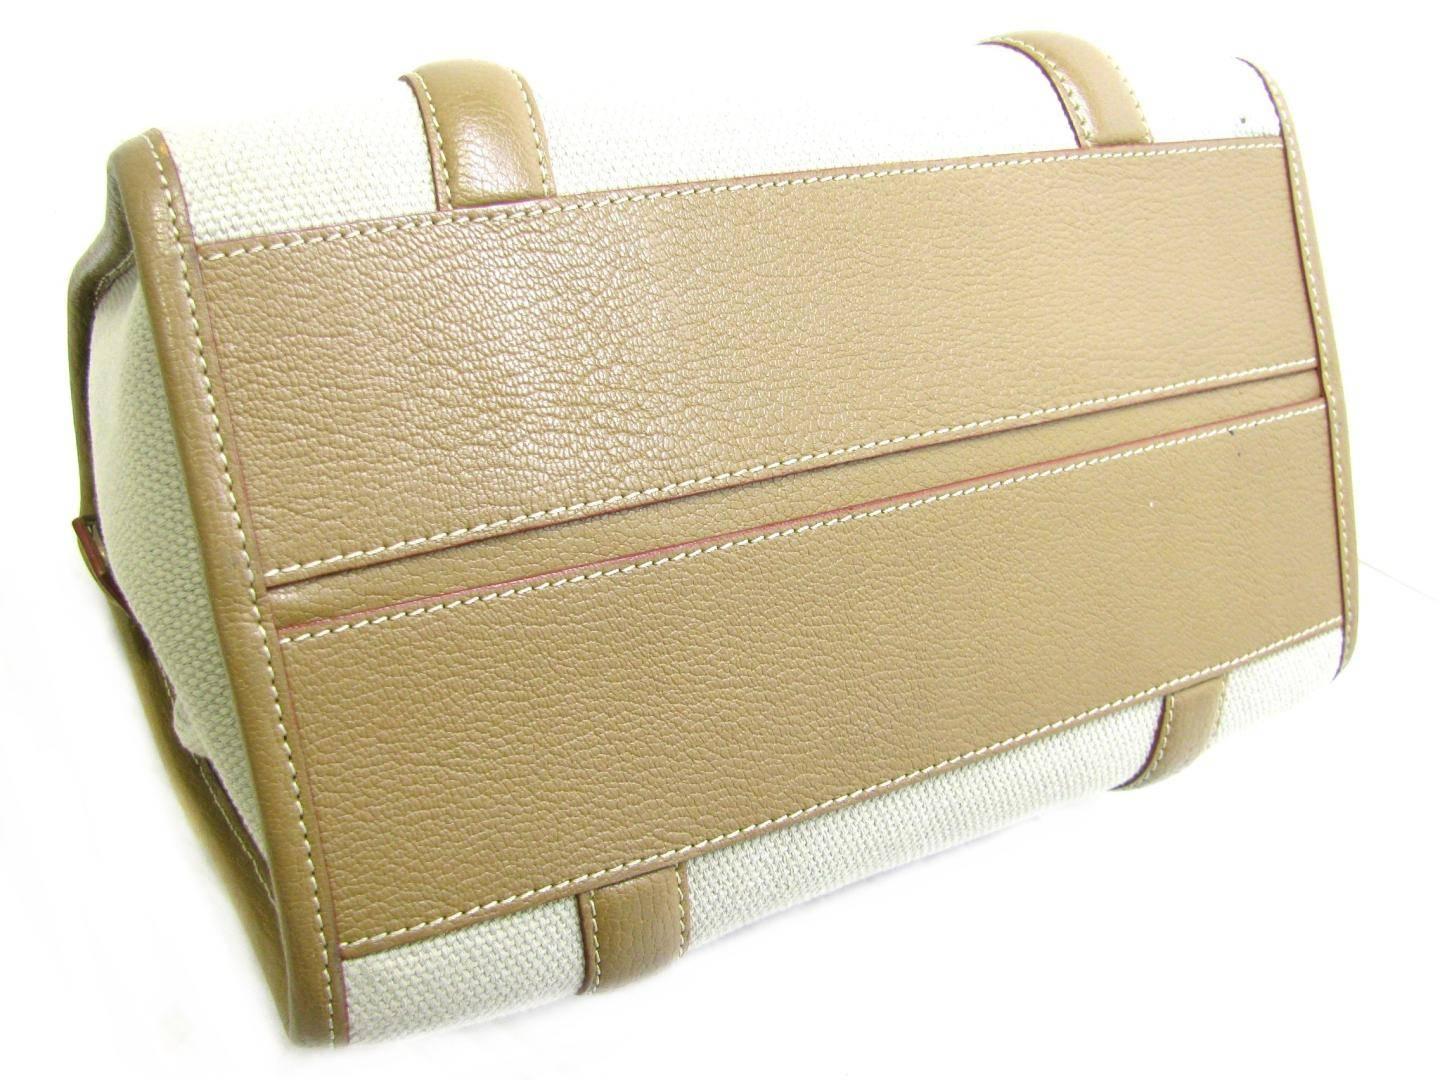 Louis Vuitton Canvas Leather Cognac Speedy 30 Carryall Top Handle Satchel Bag 1